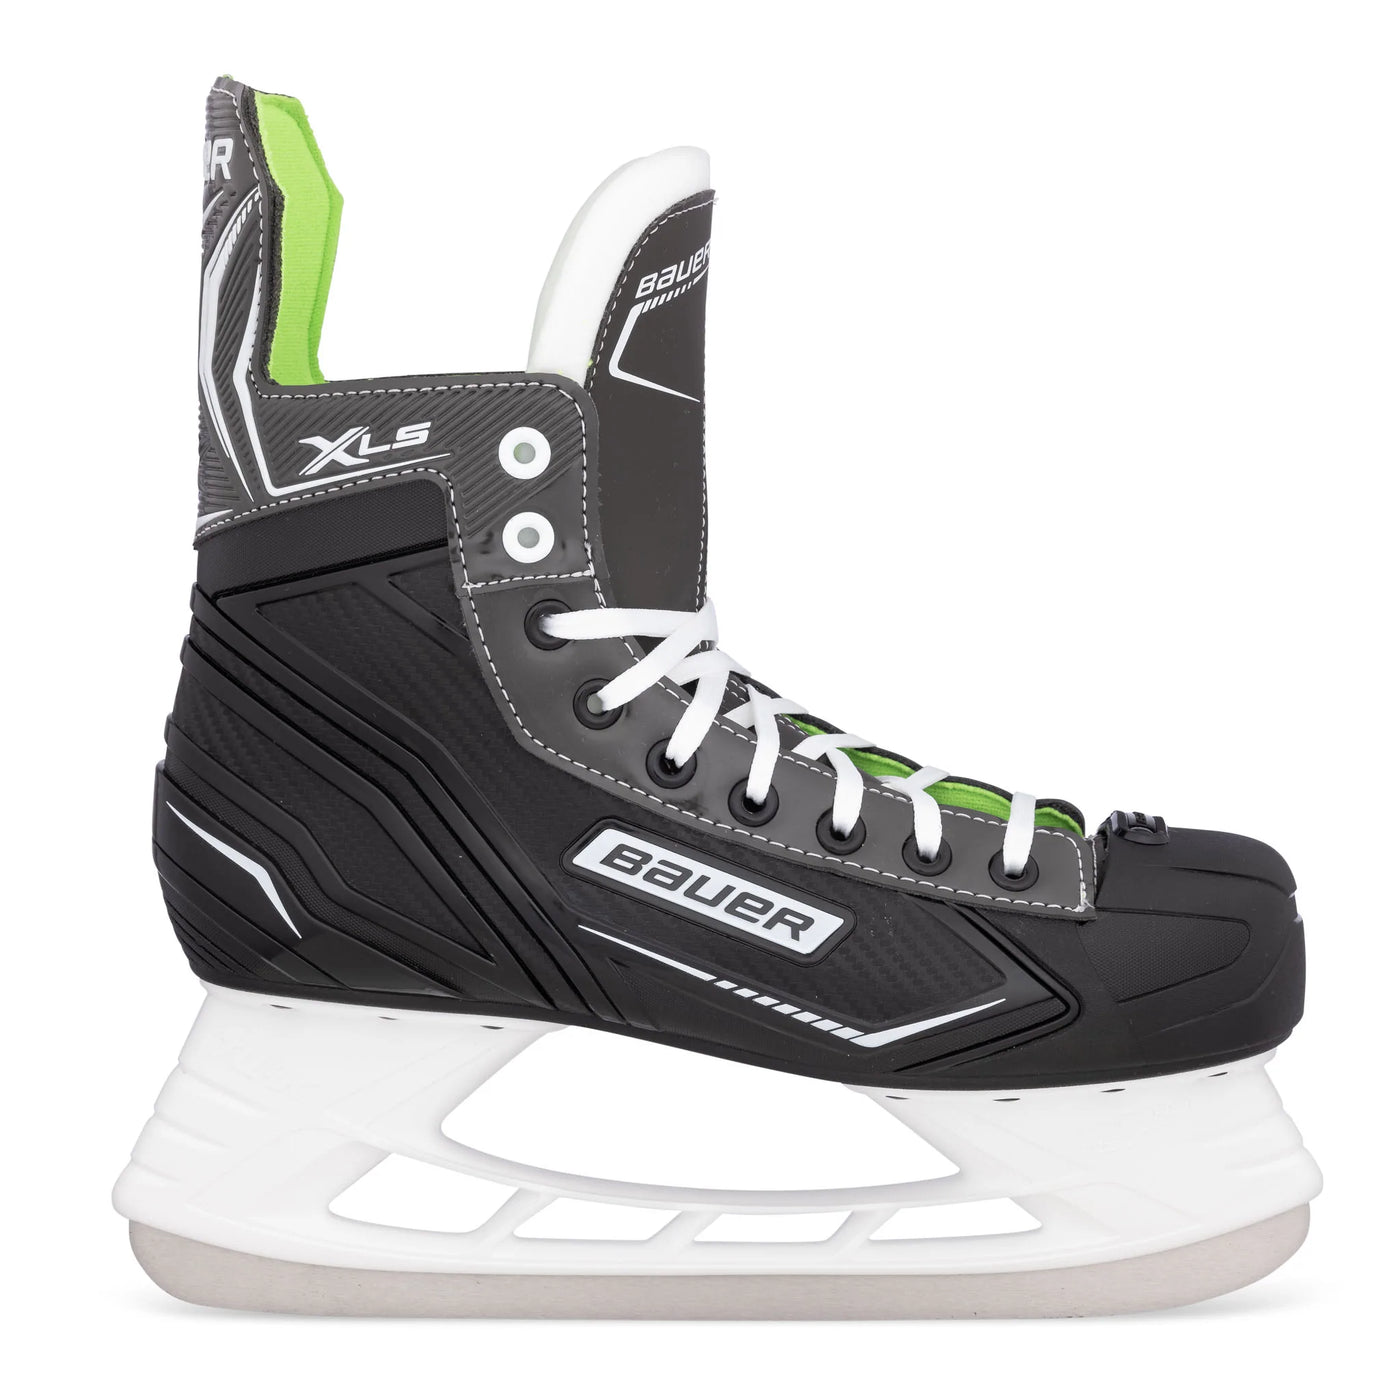 Bauer X-LS Senior Hockey Skate